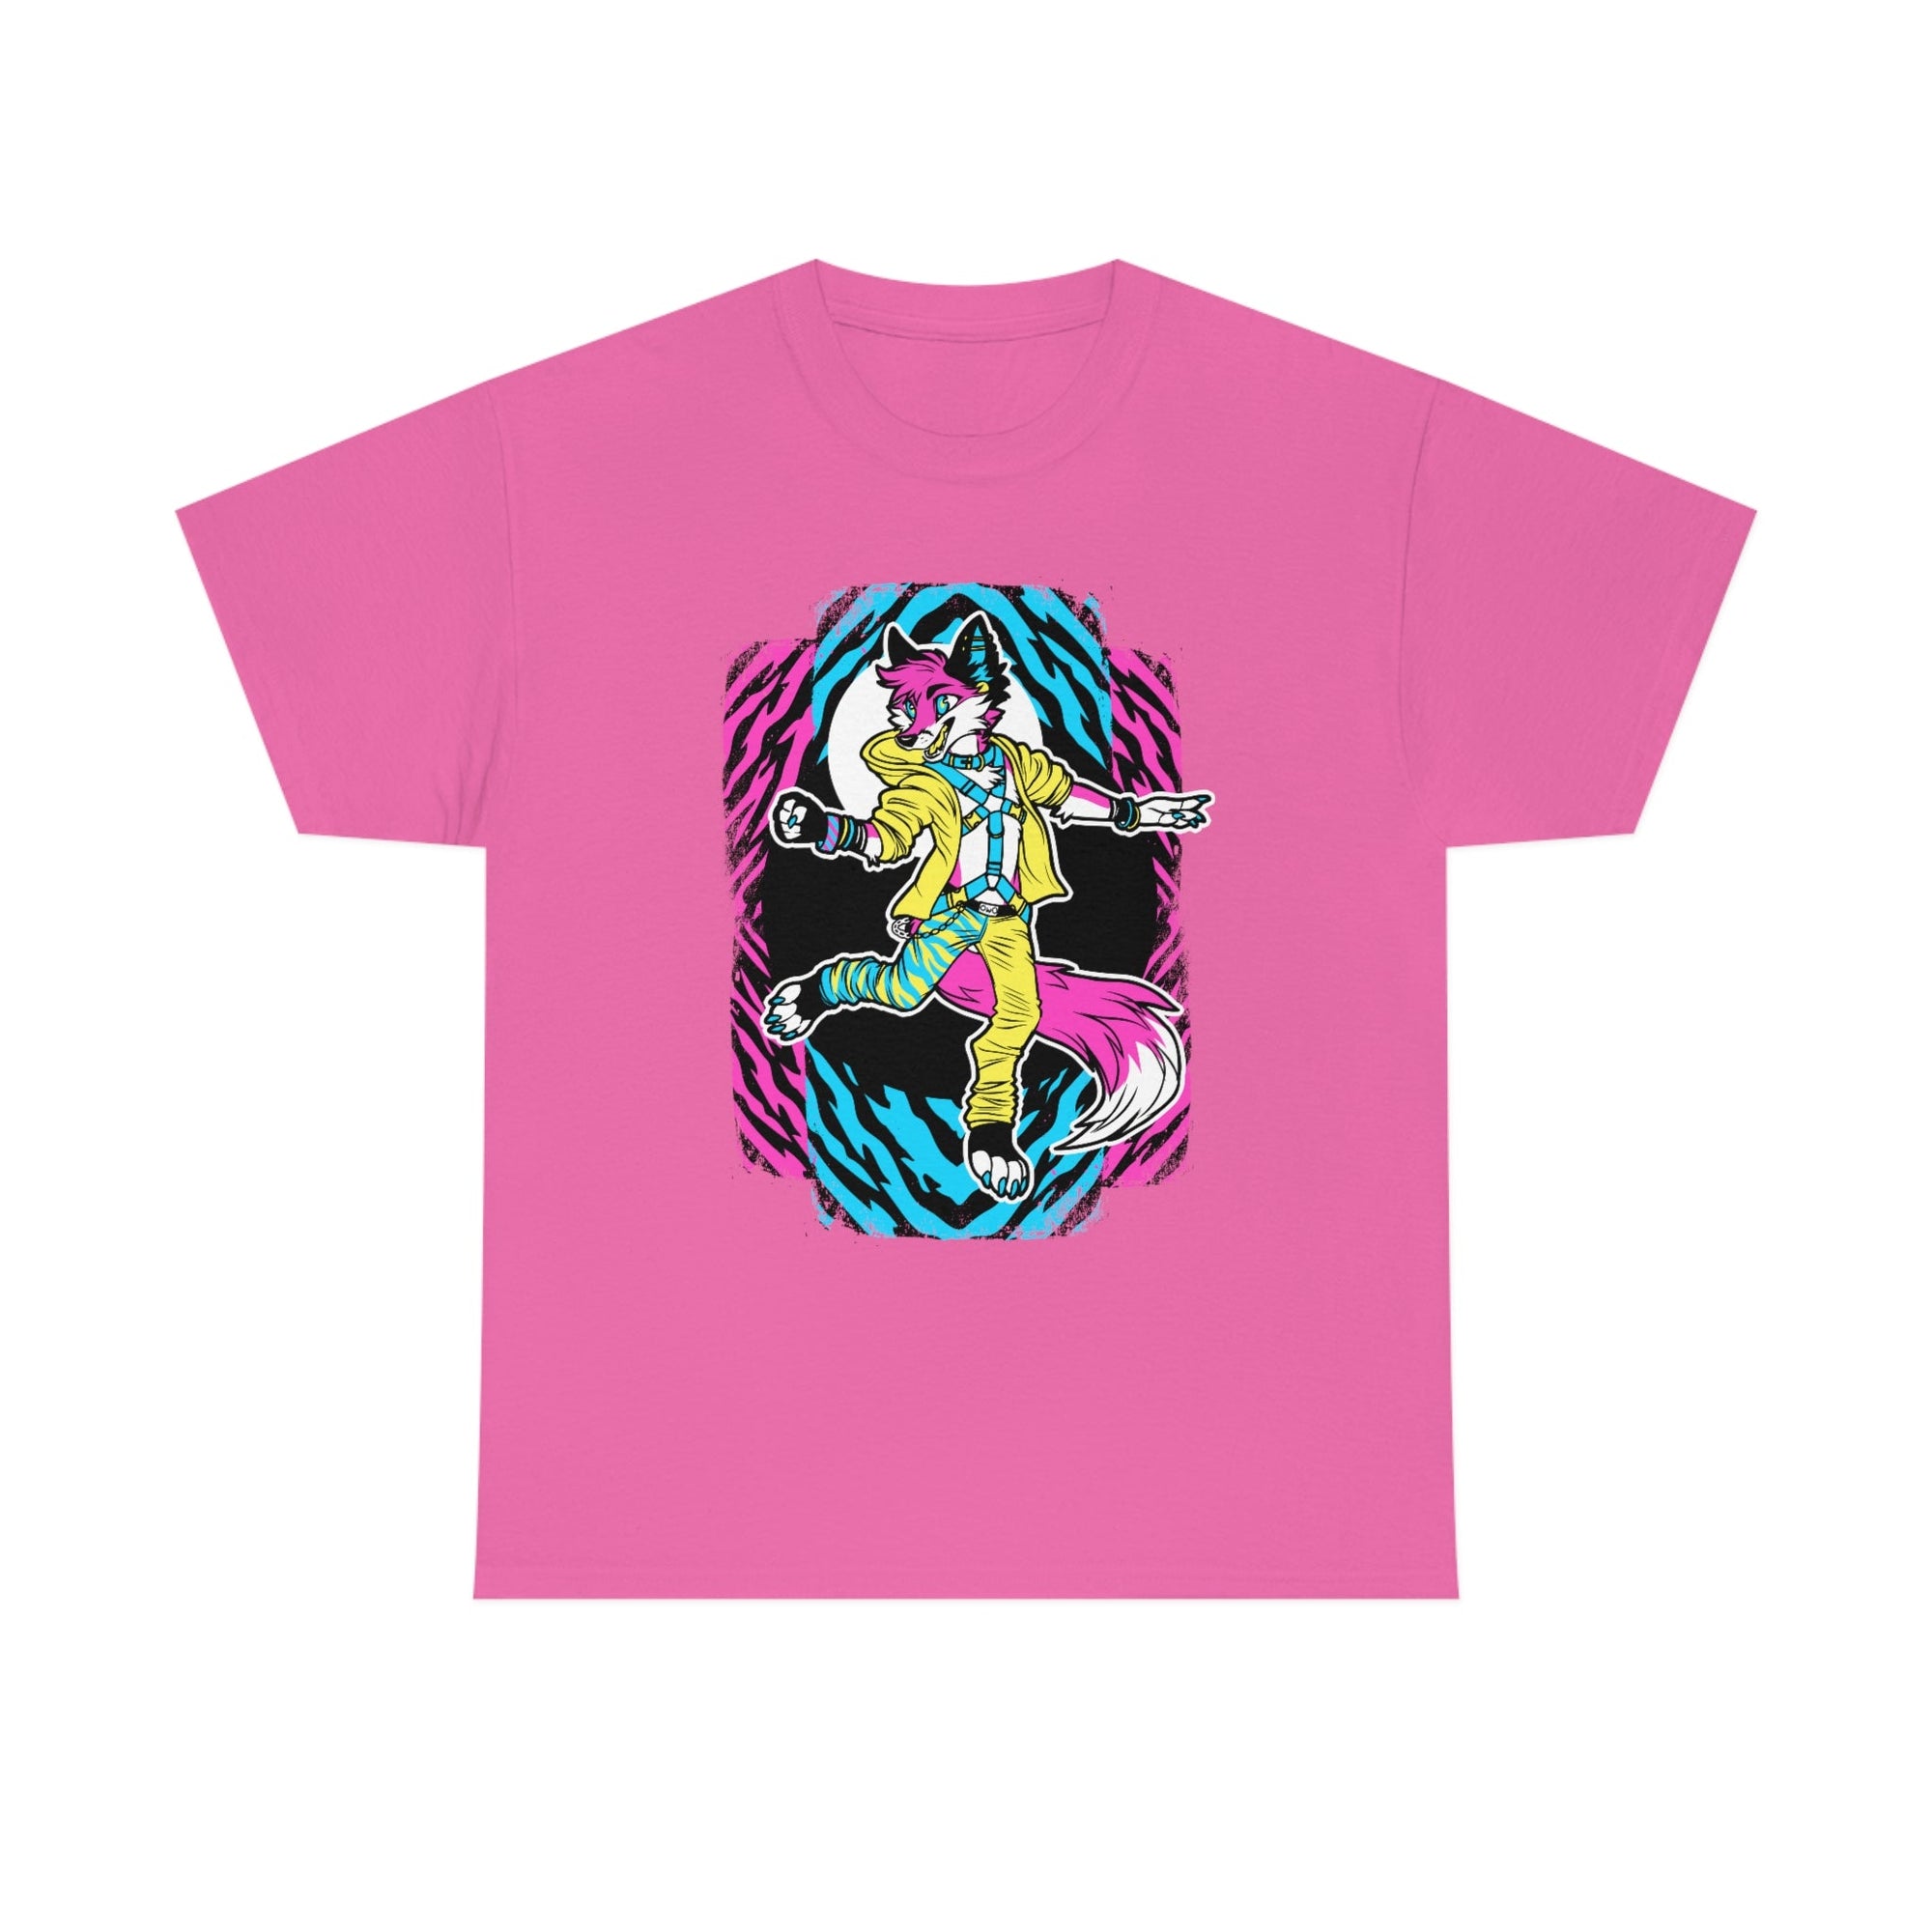 Rave Fox - T-Shirt T-Shirt Artworktee Pink S 